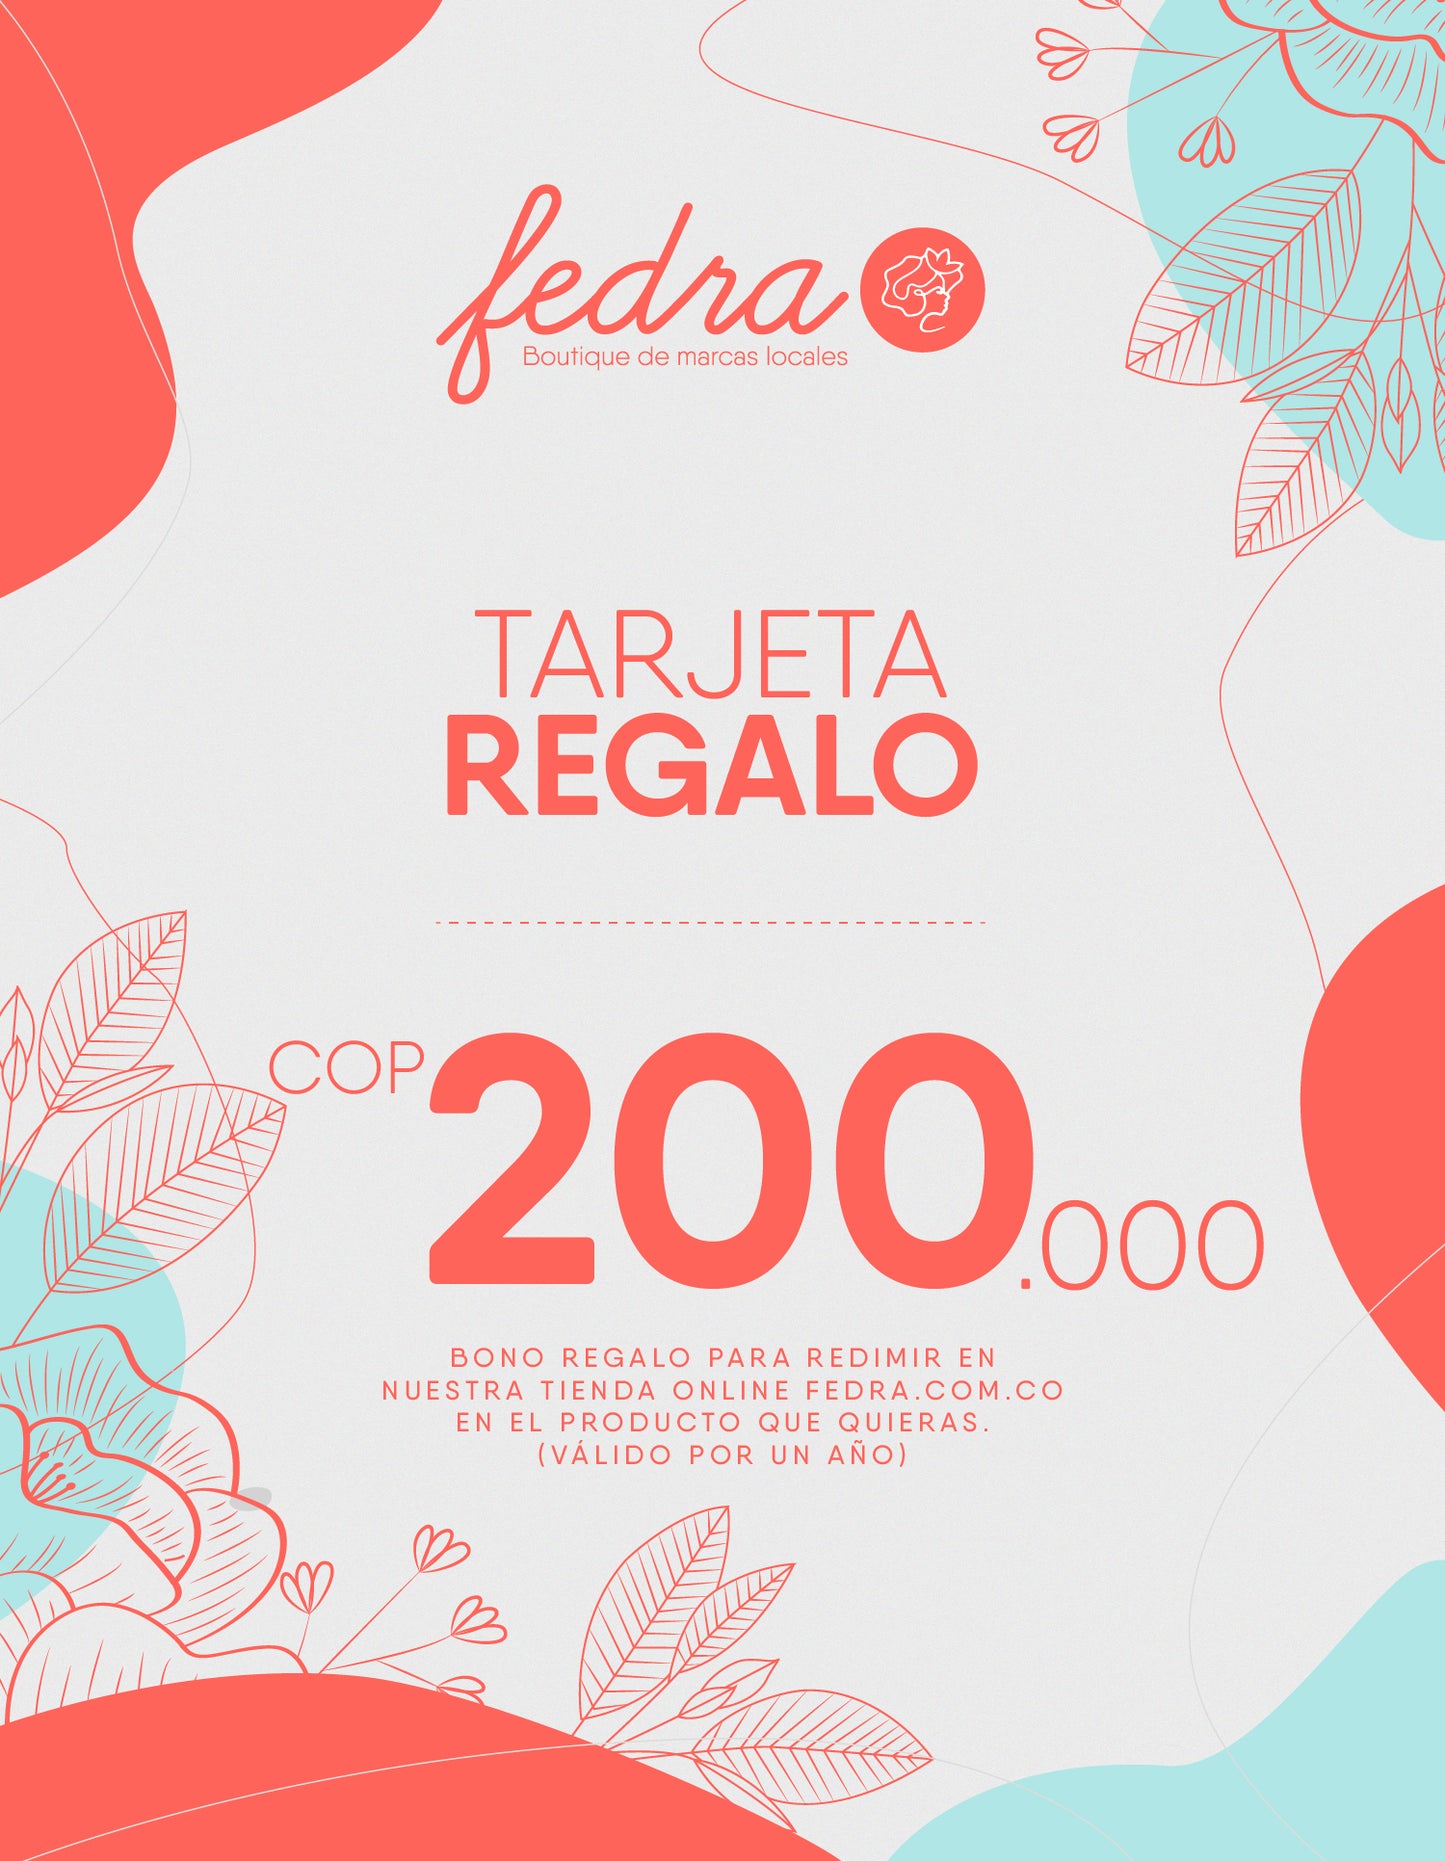 Tarjeta Regalo $200.000 / fedra.com.co